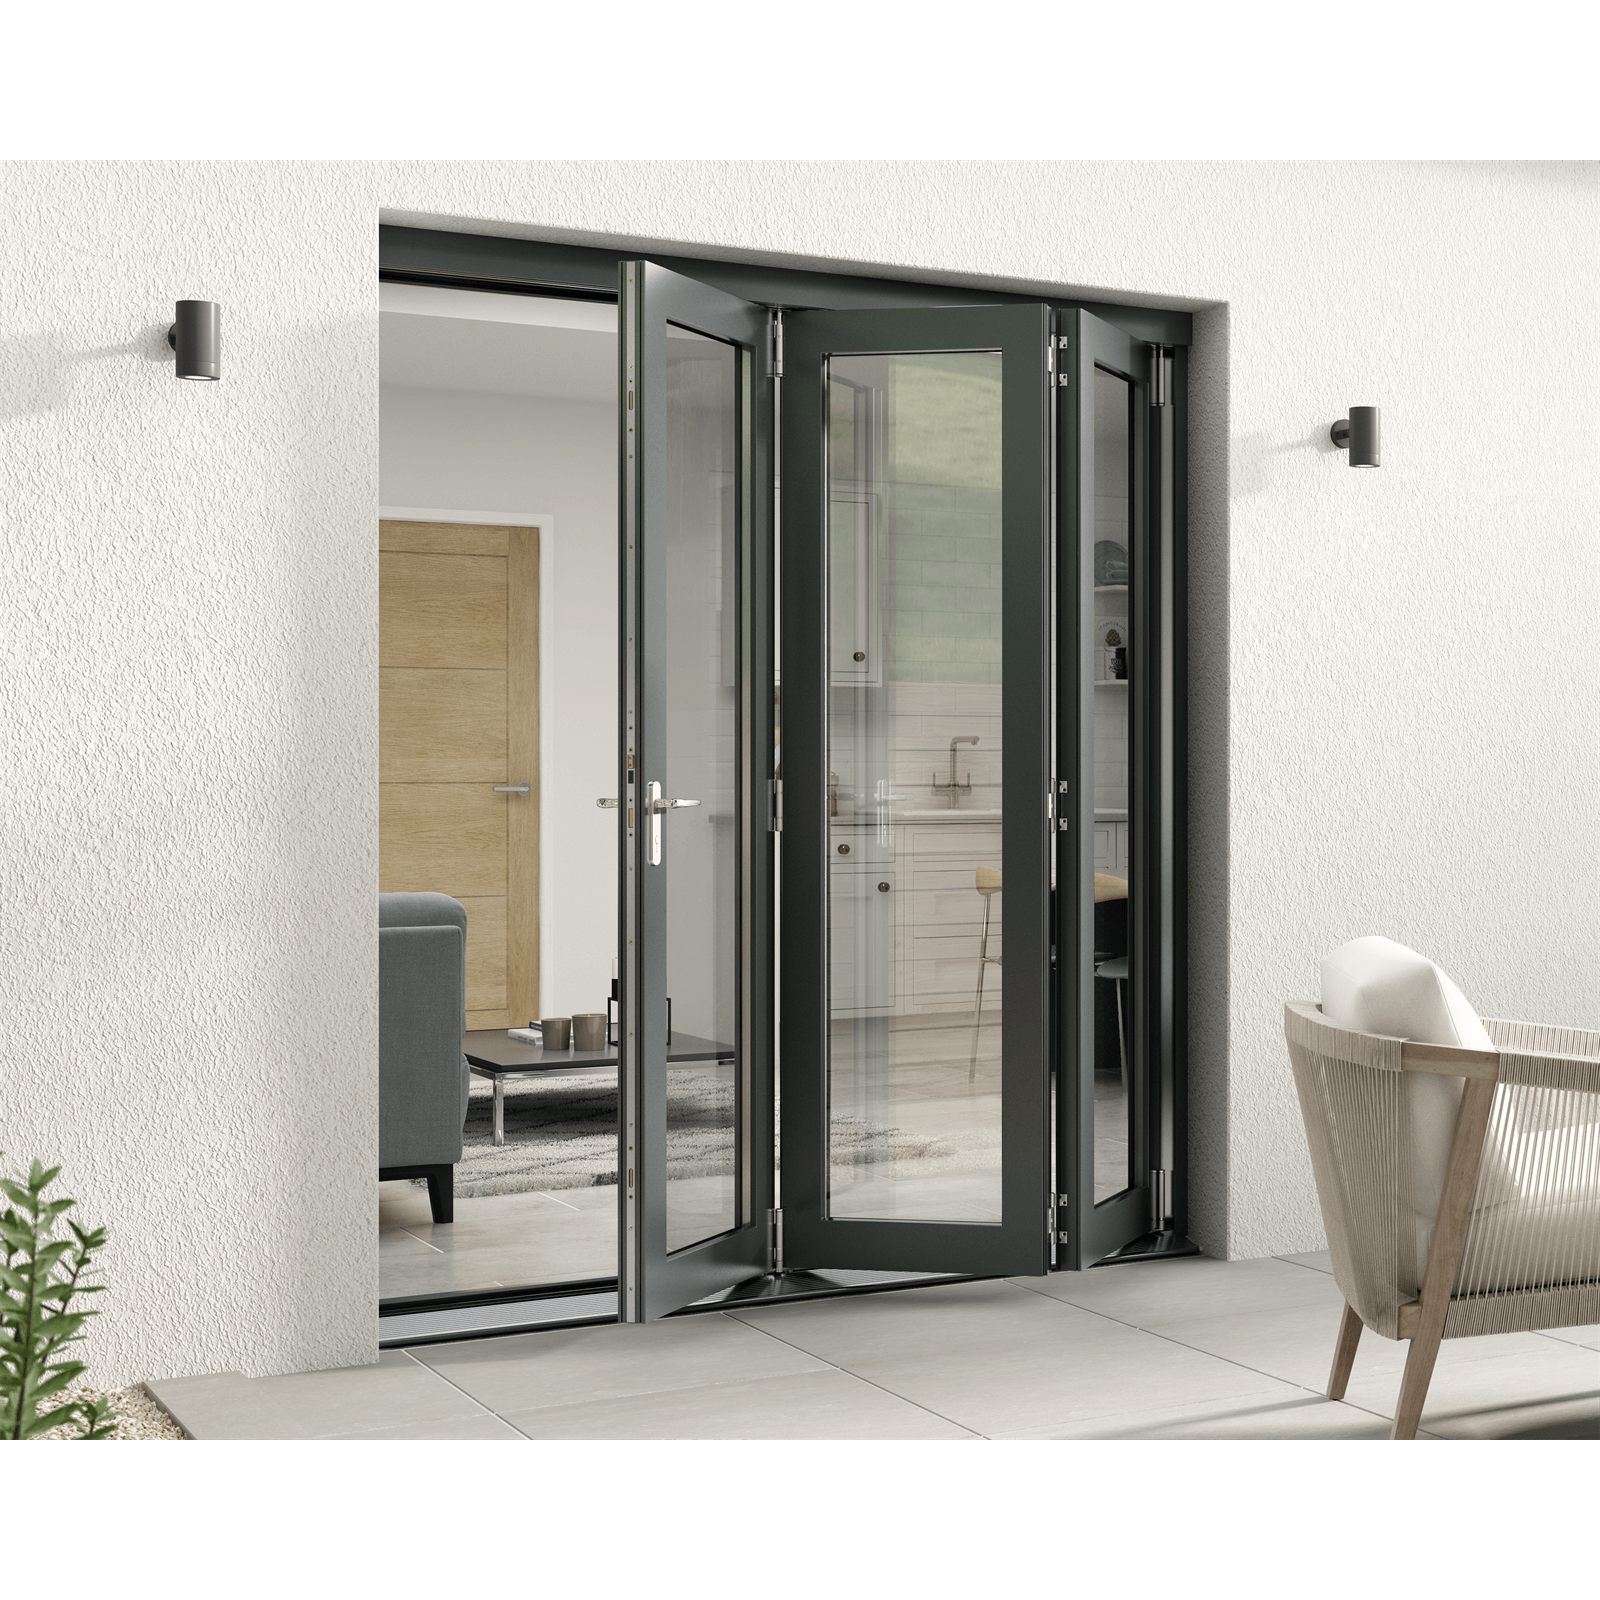 Photo of Rohden Slide & Fold Door Set 1800mm - Grey